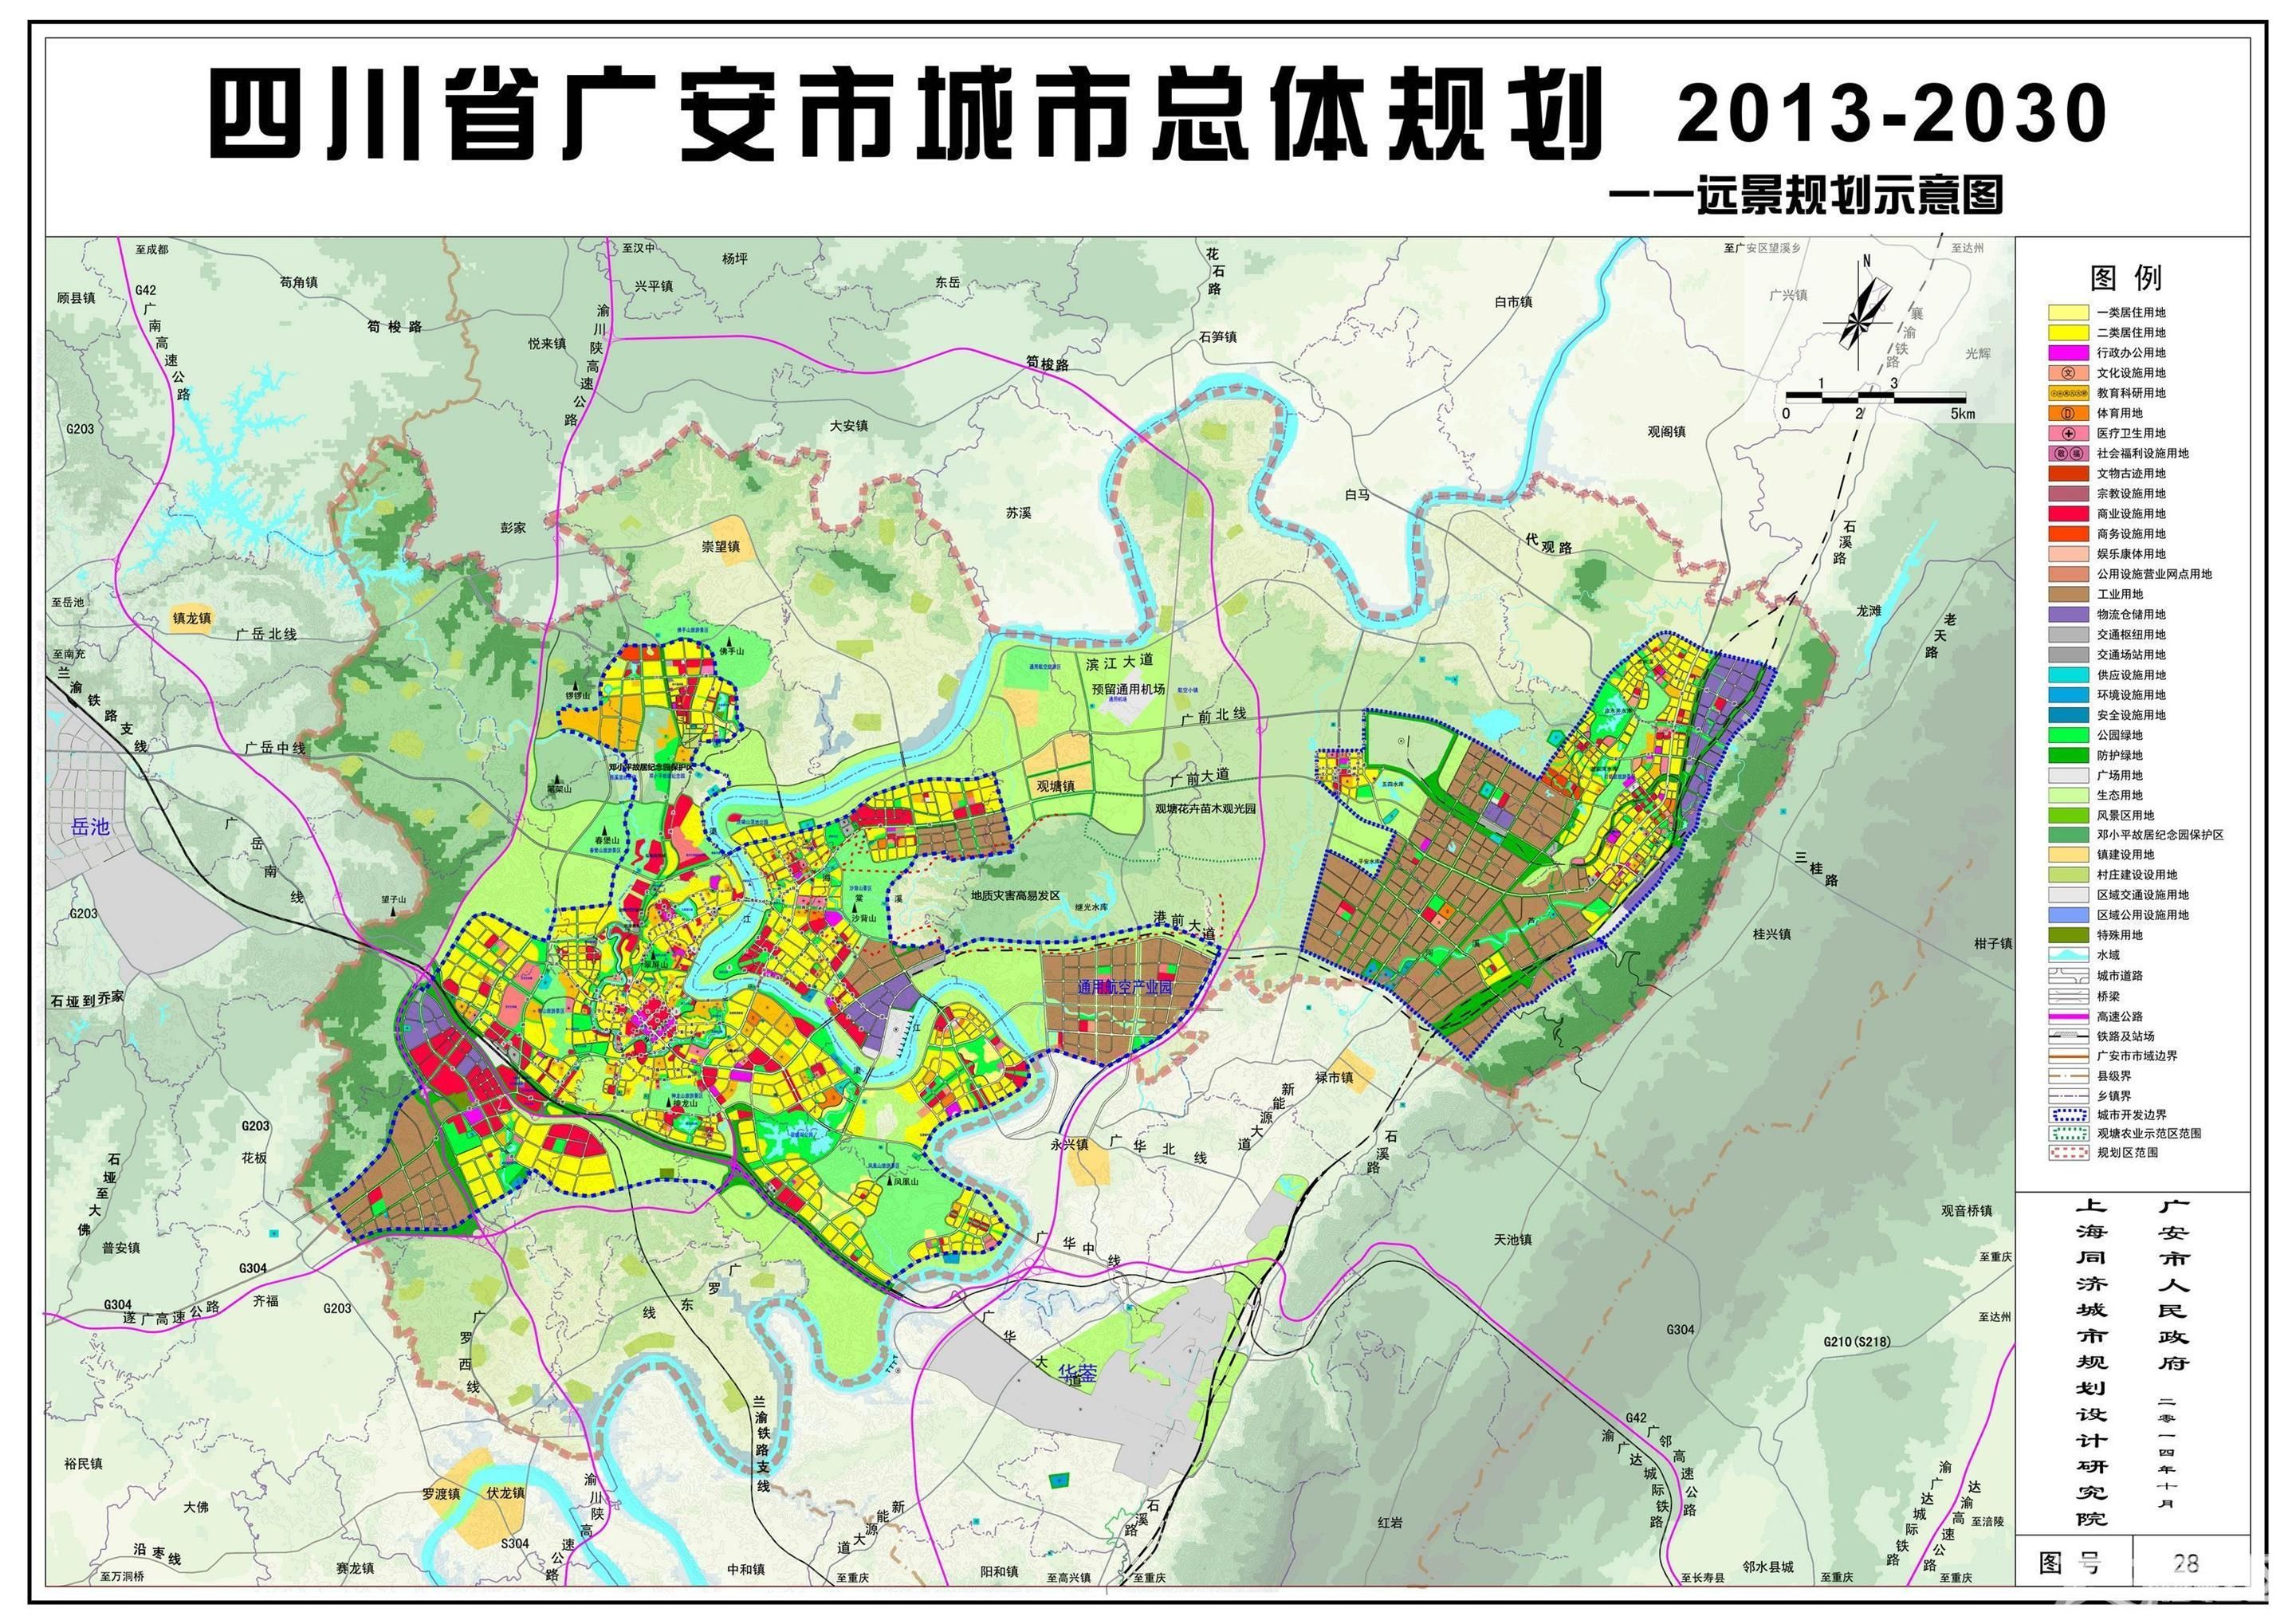 枣山园区城市规划核实应该预留成都至广安城际铁路走廊空间